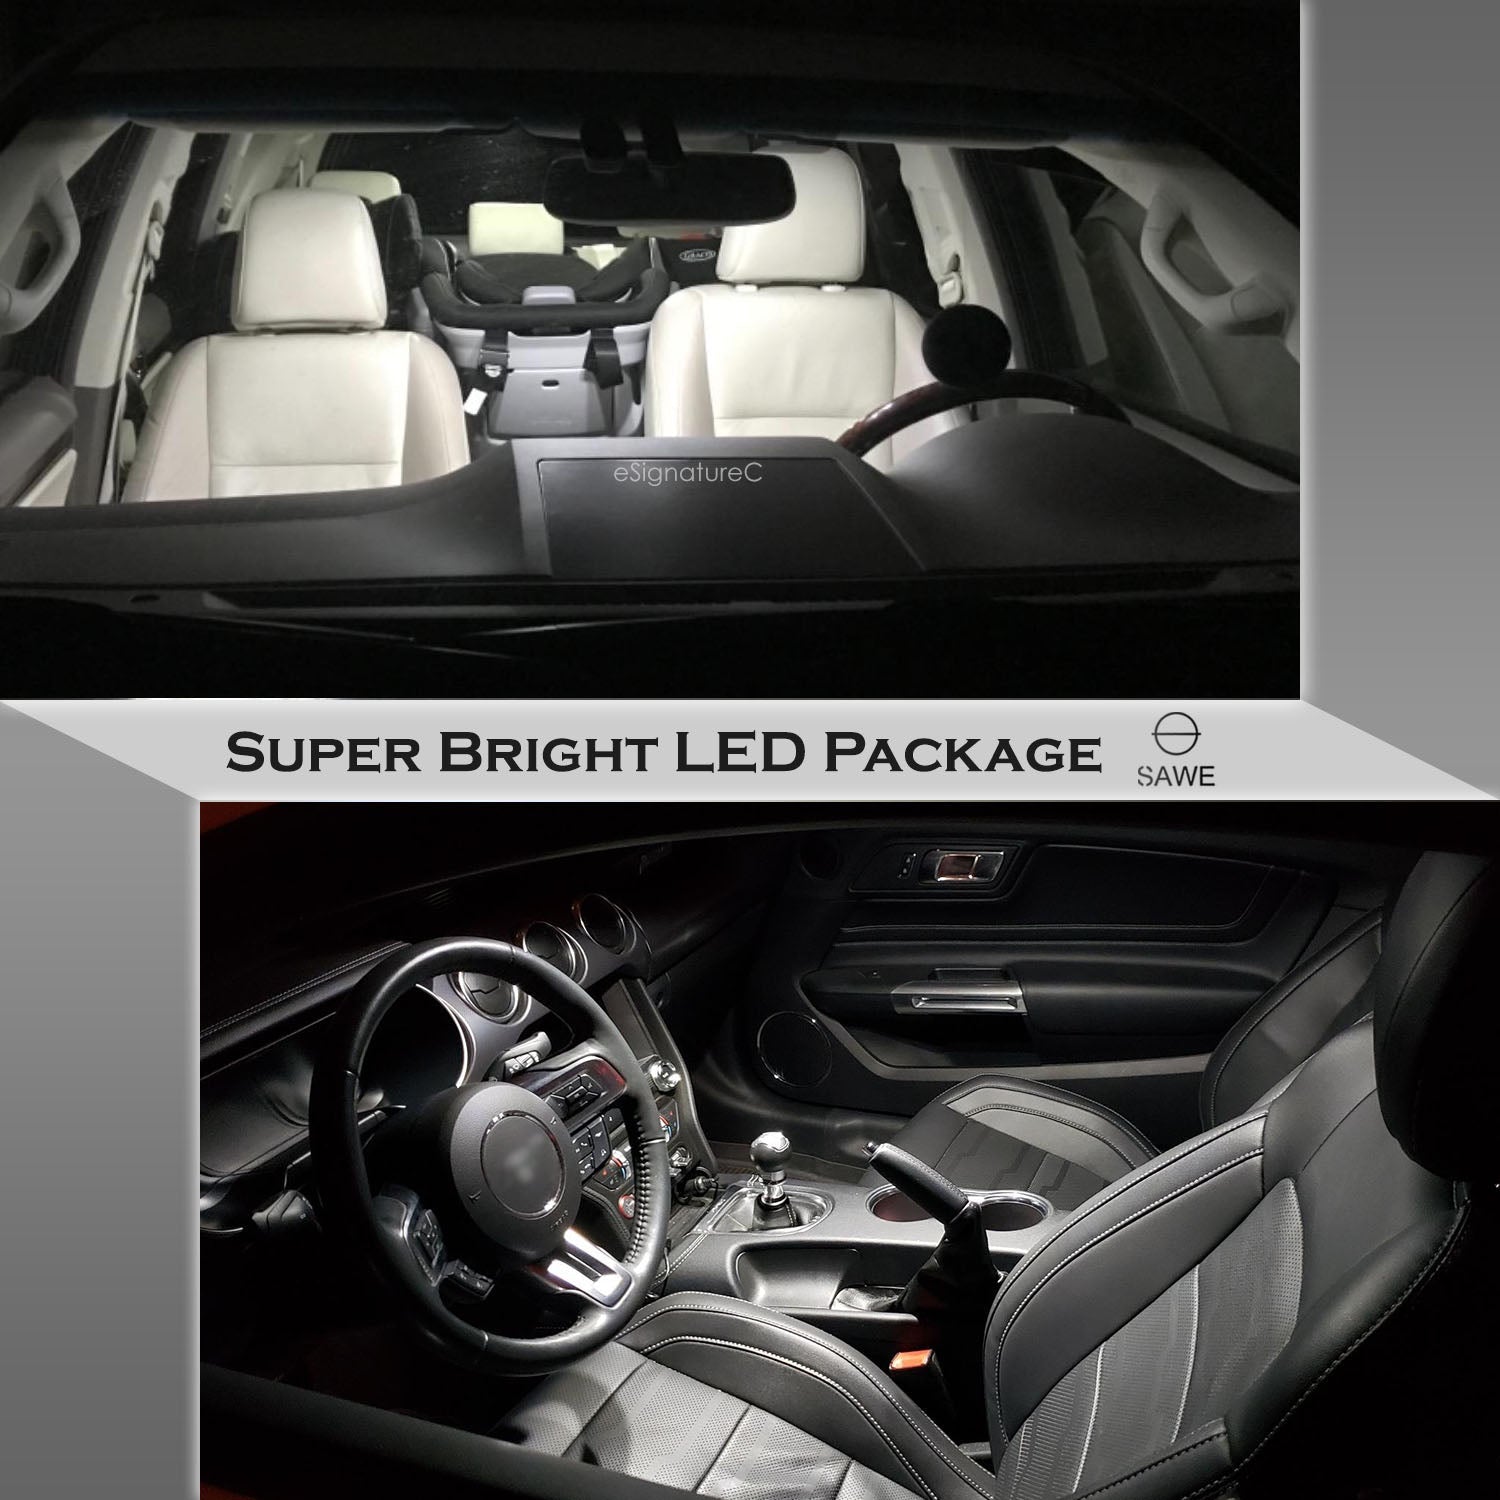 For Dodge Dakota Interior LED Lights - Dome & Map Lights Package Kit for 1997 - 2010 - White